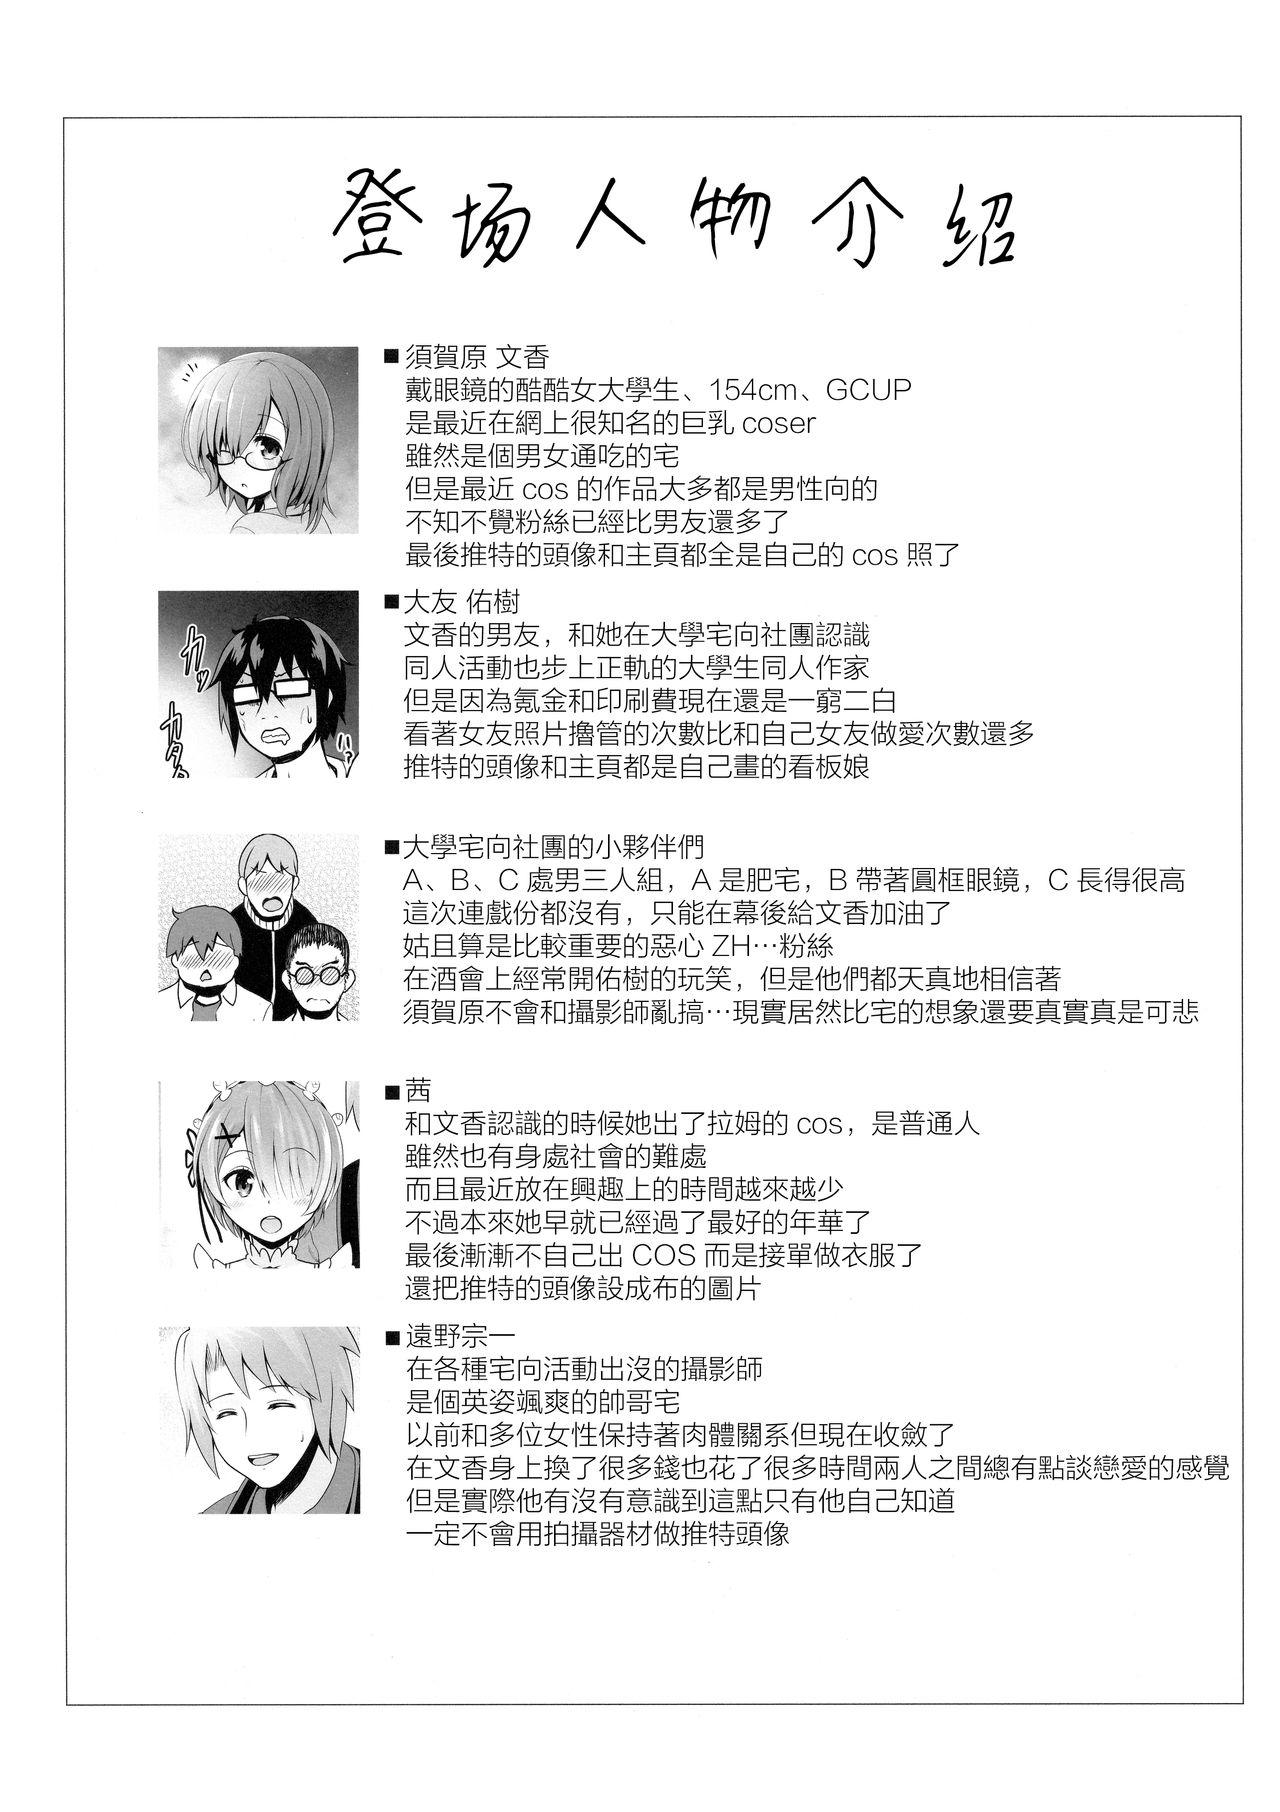 Maledom Tennen Kamichichi Shirouto Cosplayer Nangoku Ritou Mizugi Loca Satsuei - Kantai collection Fate grand order Puta - Page 3